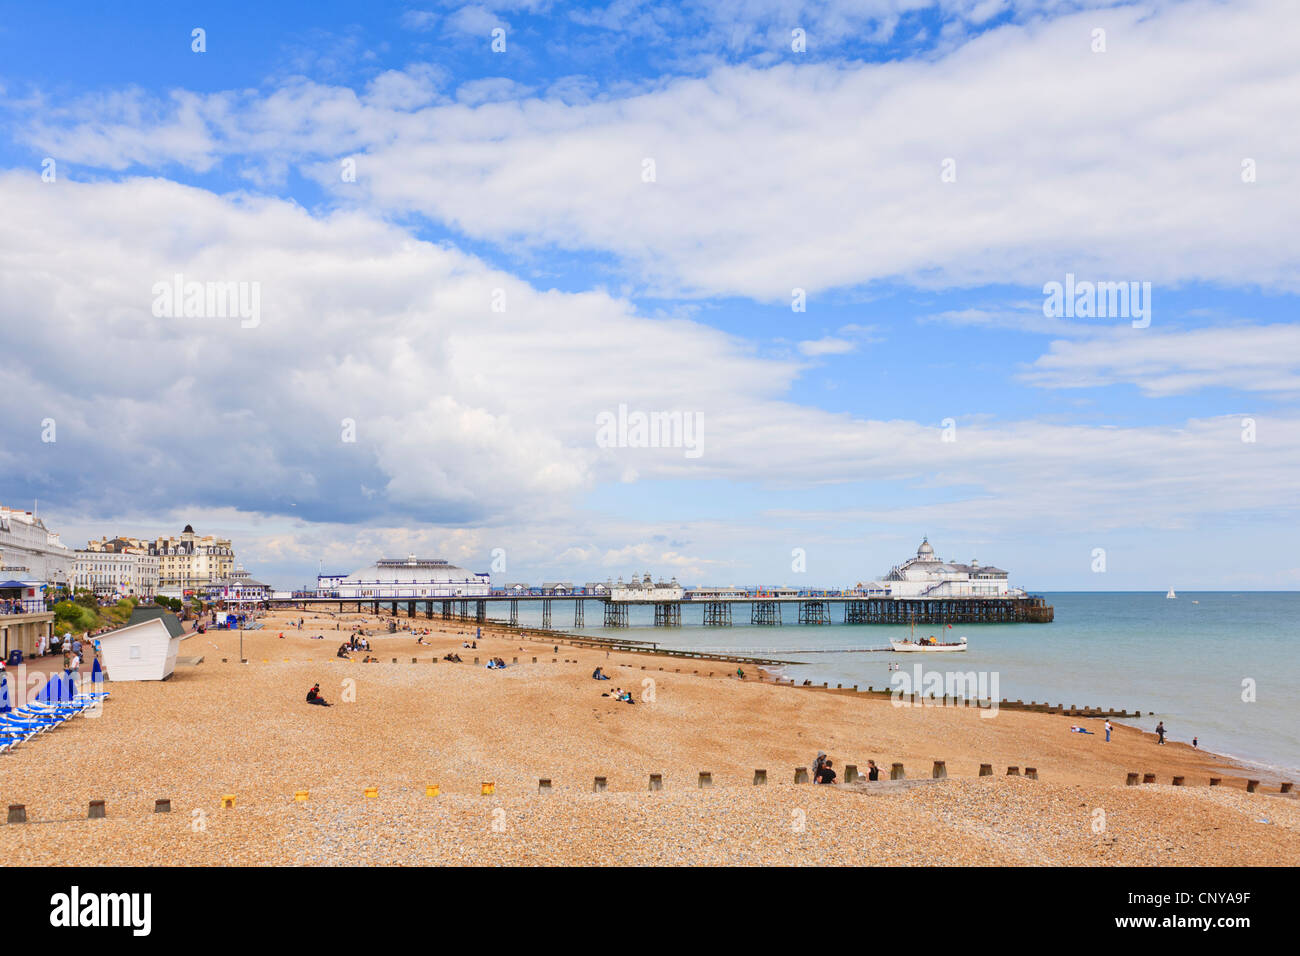 La plage et la jetée d'Eastbourne, Sussex, Angleterre, sous un ciel dramatique. Banque D'Images